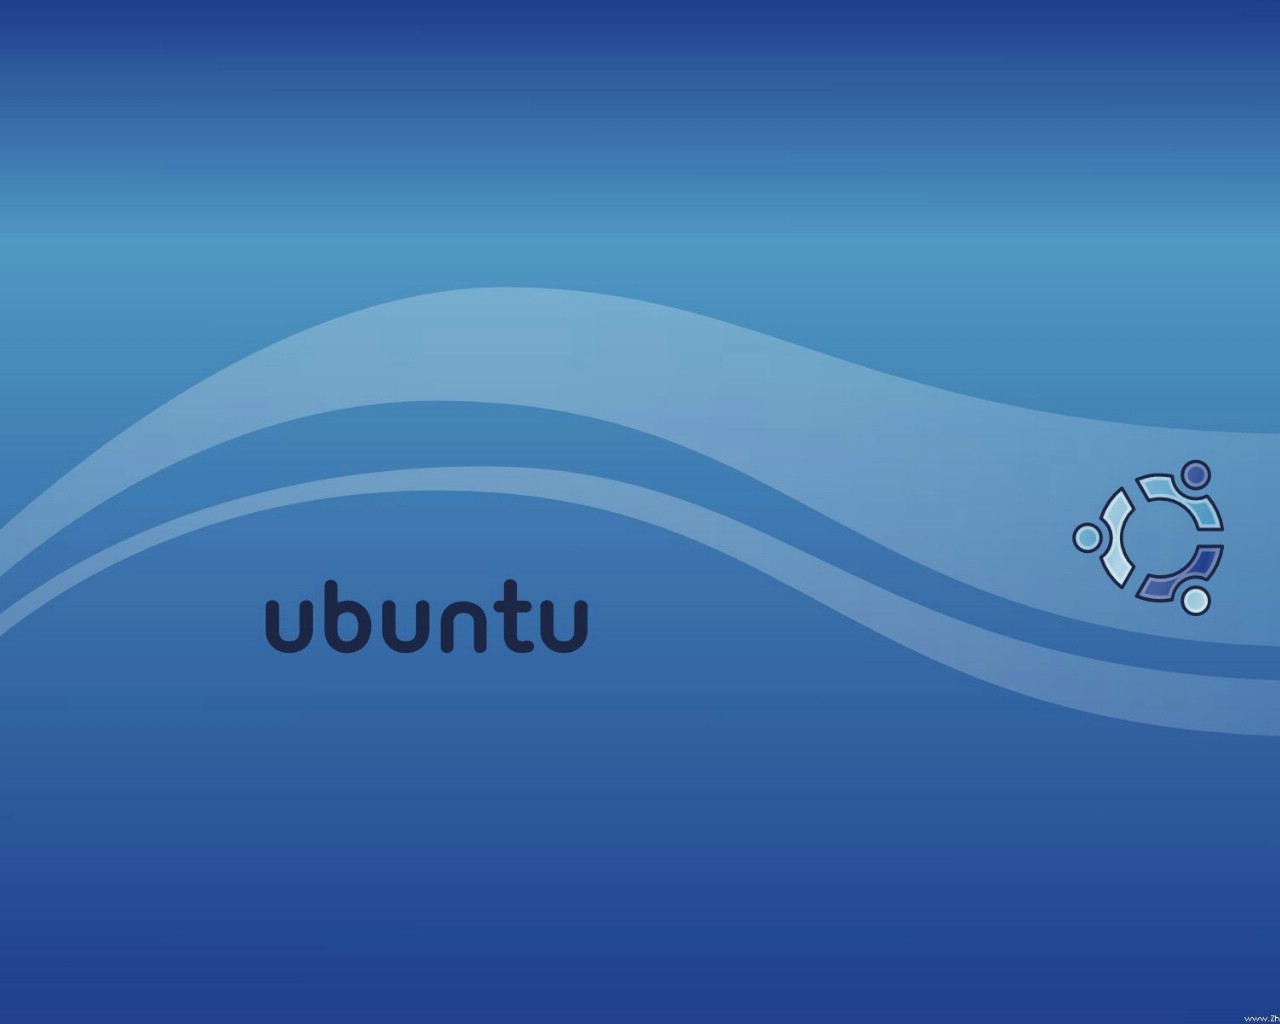 壁纸1280x1024Ubuntu Linux 作业系统1024 768 1280 1024 1600 1200 壁纸26壁纸 Ubuntu Lin壁纸 Ubuntu Lin图片 Ubuntu Lin素材 系统壁纸 系统图库 系统图片素材桌面壁纸